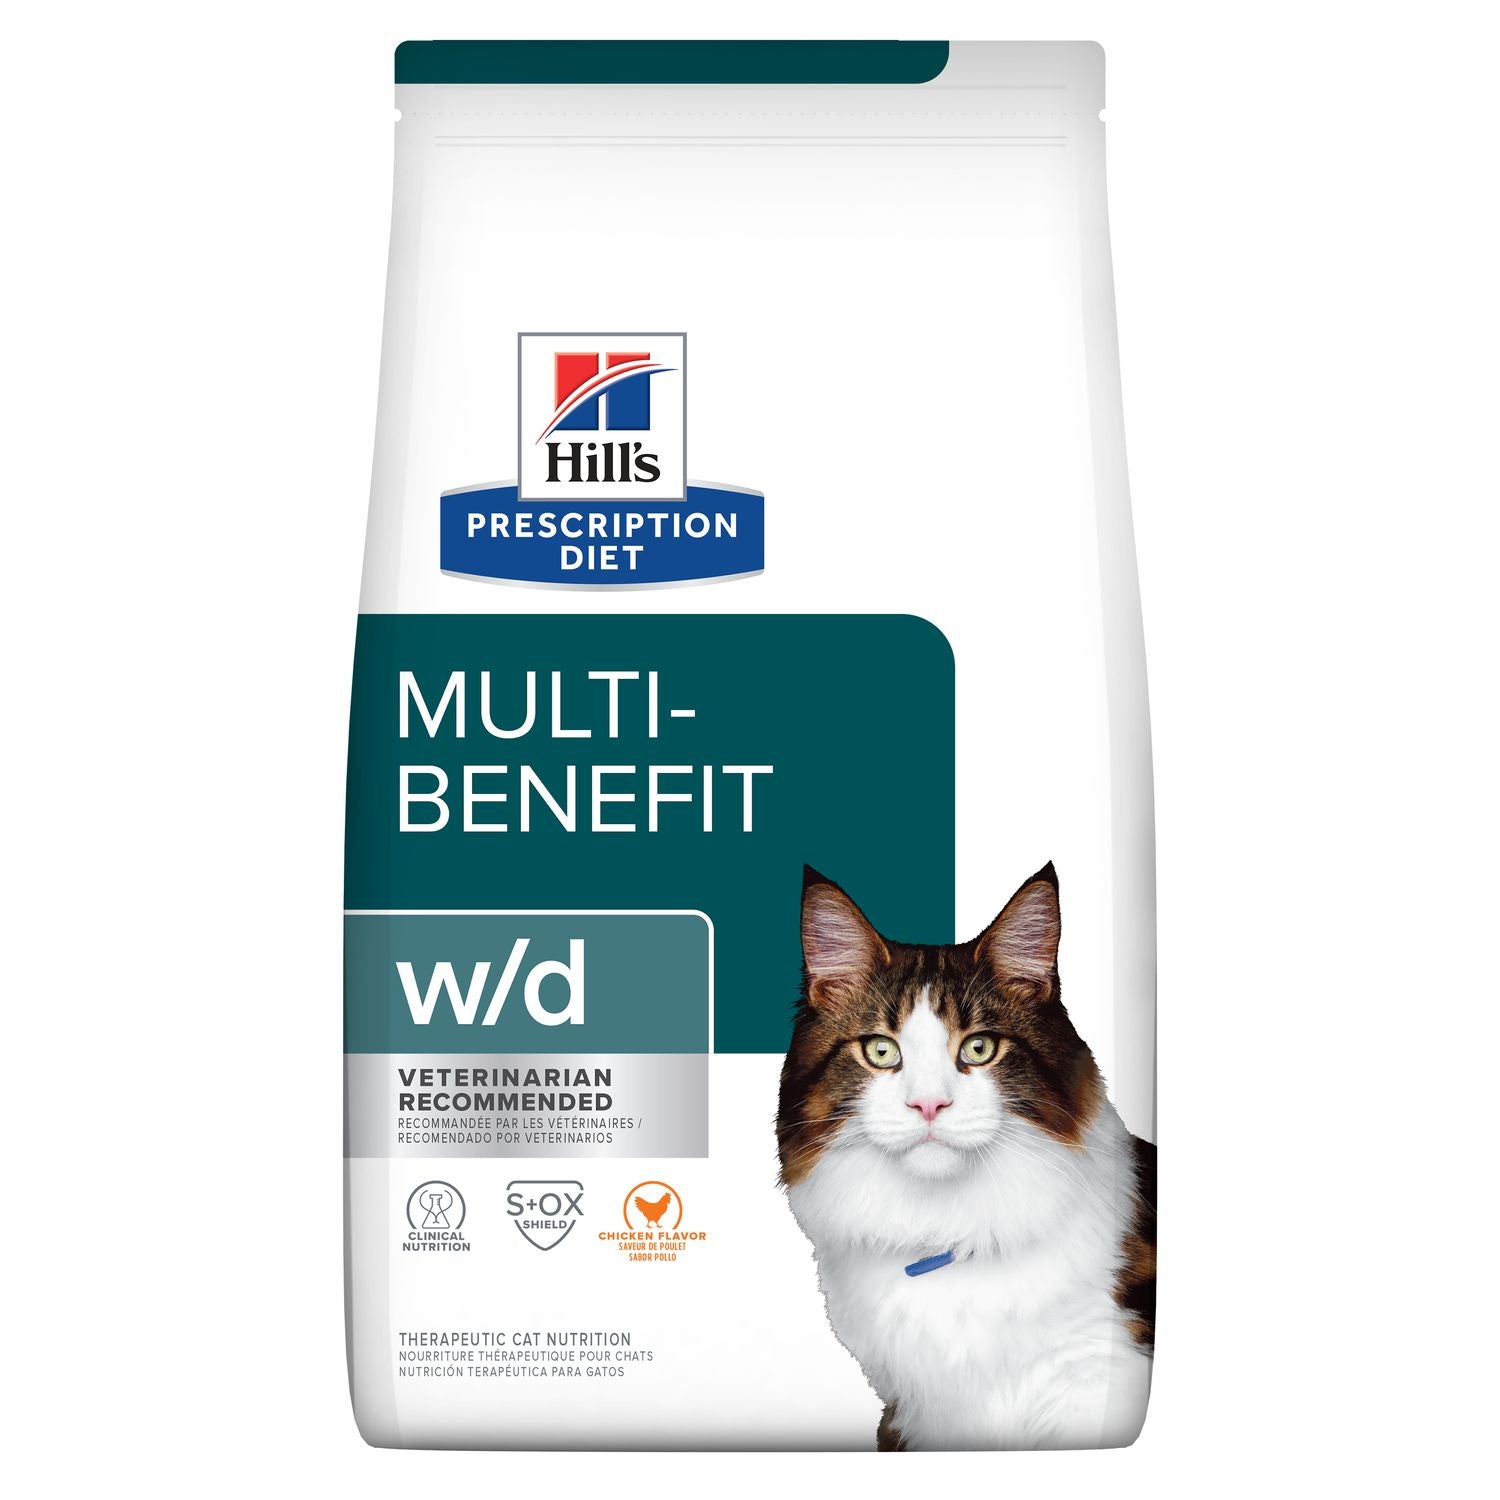 Hills Prescription Diet w/d Multi-Benefit Cat